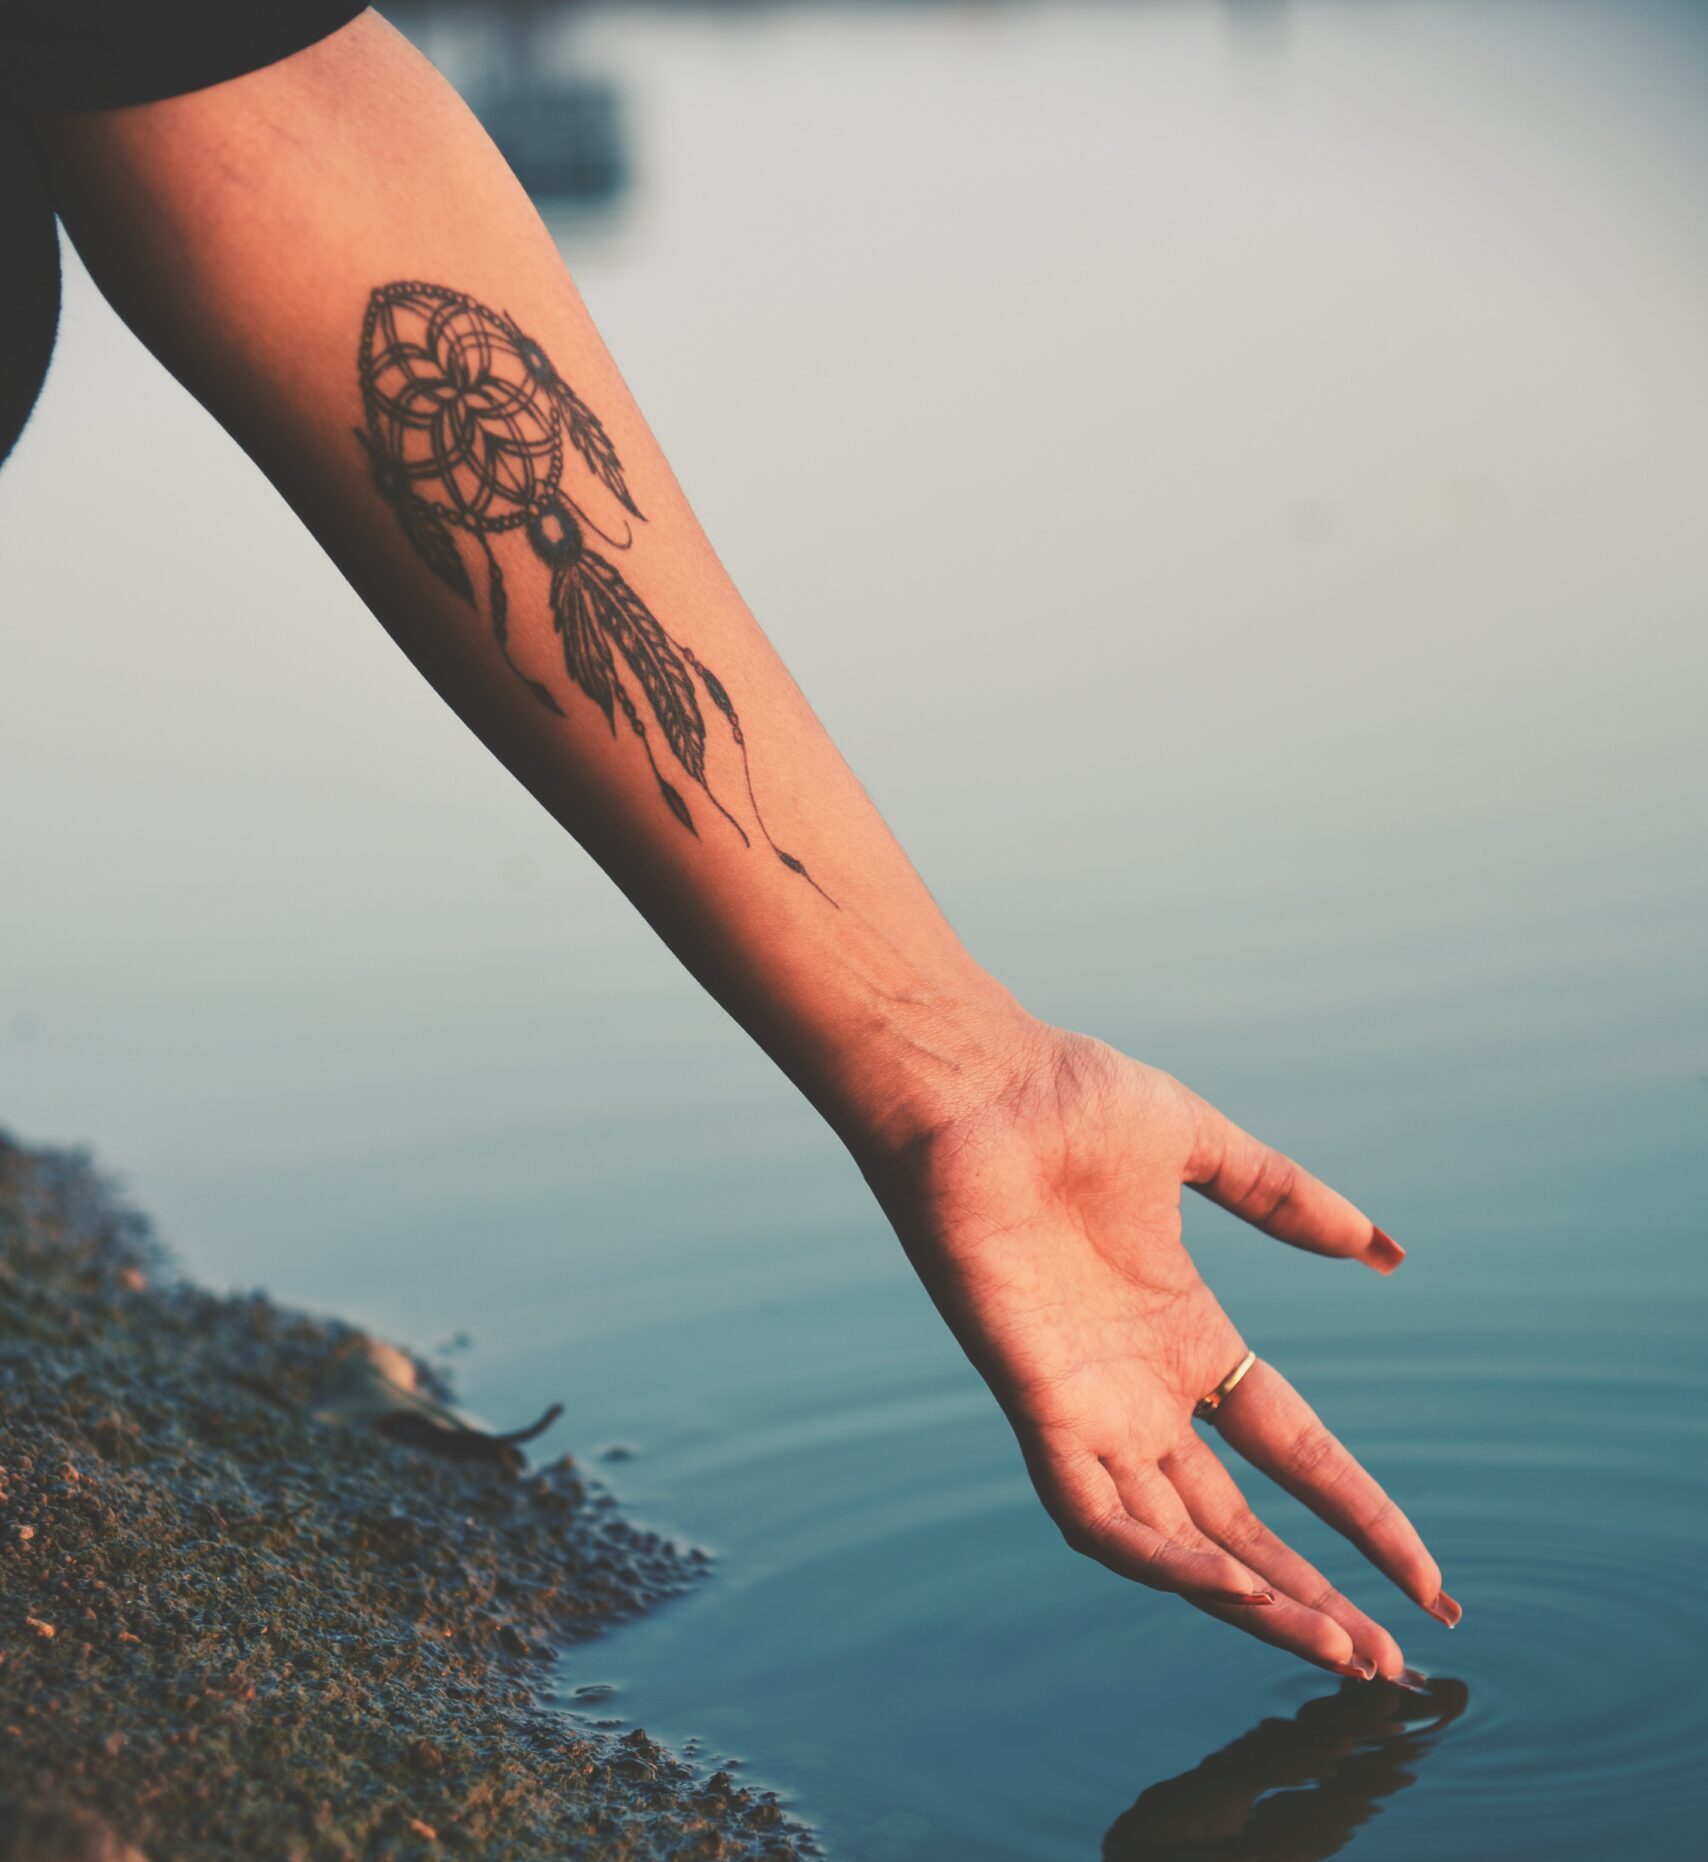 Tatuaje de atrapasueños en el brazo